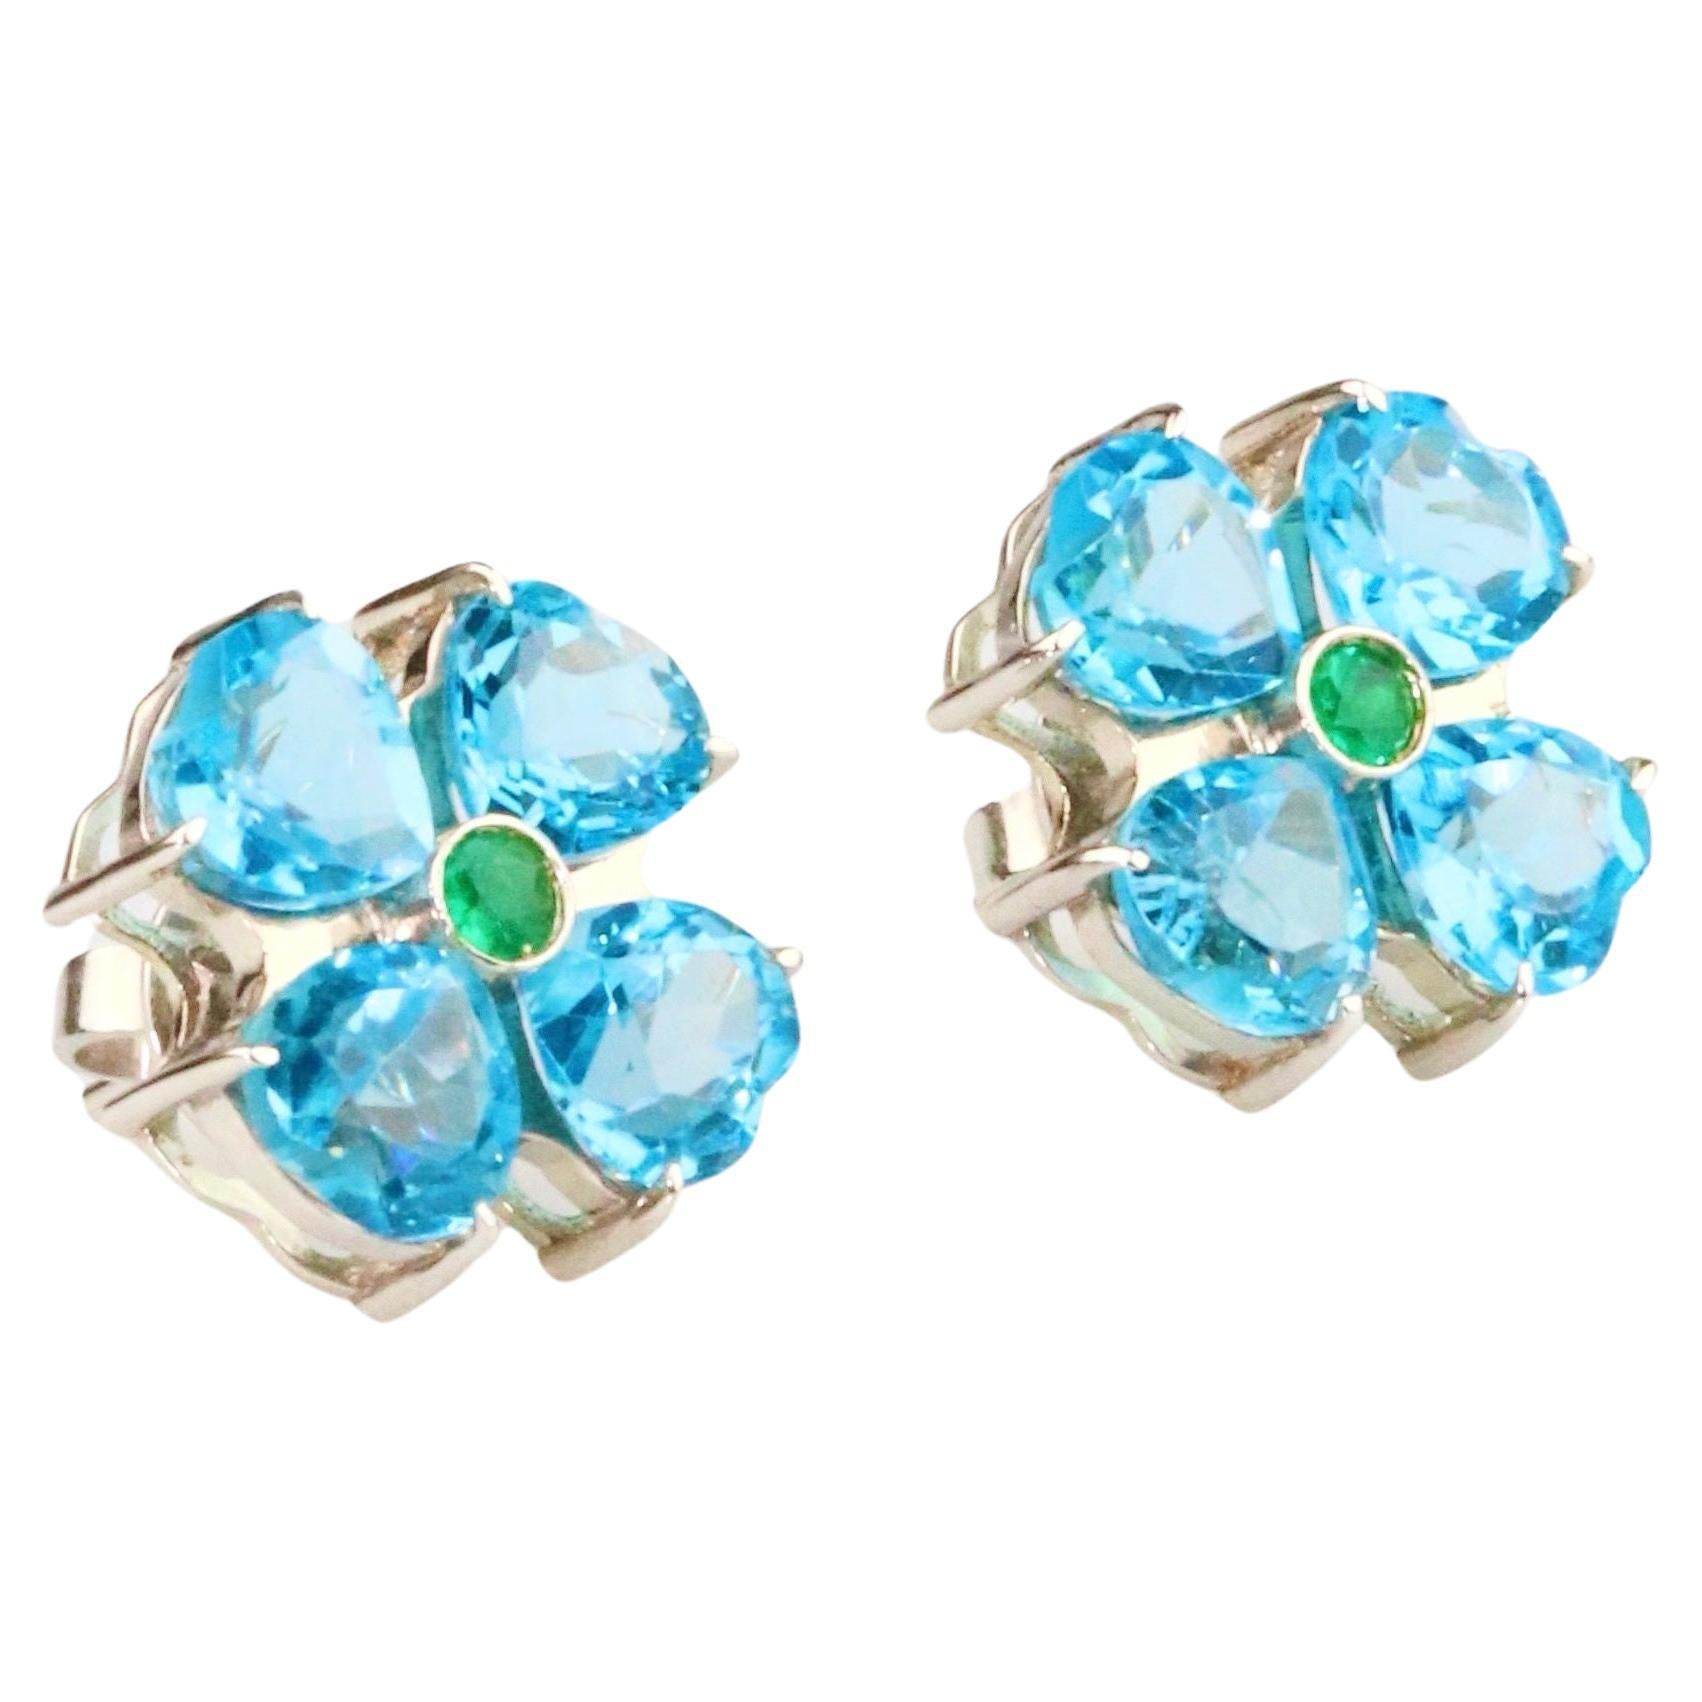 Blue Flower Earrings & Emerald - 18K Solid White Gold